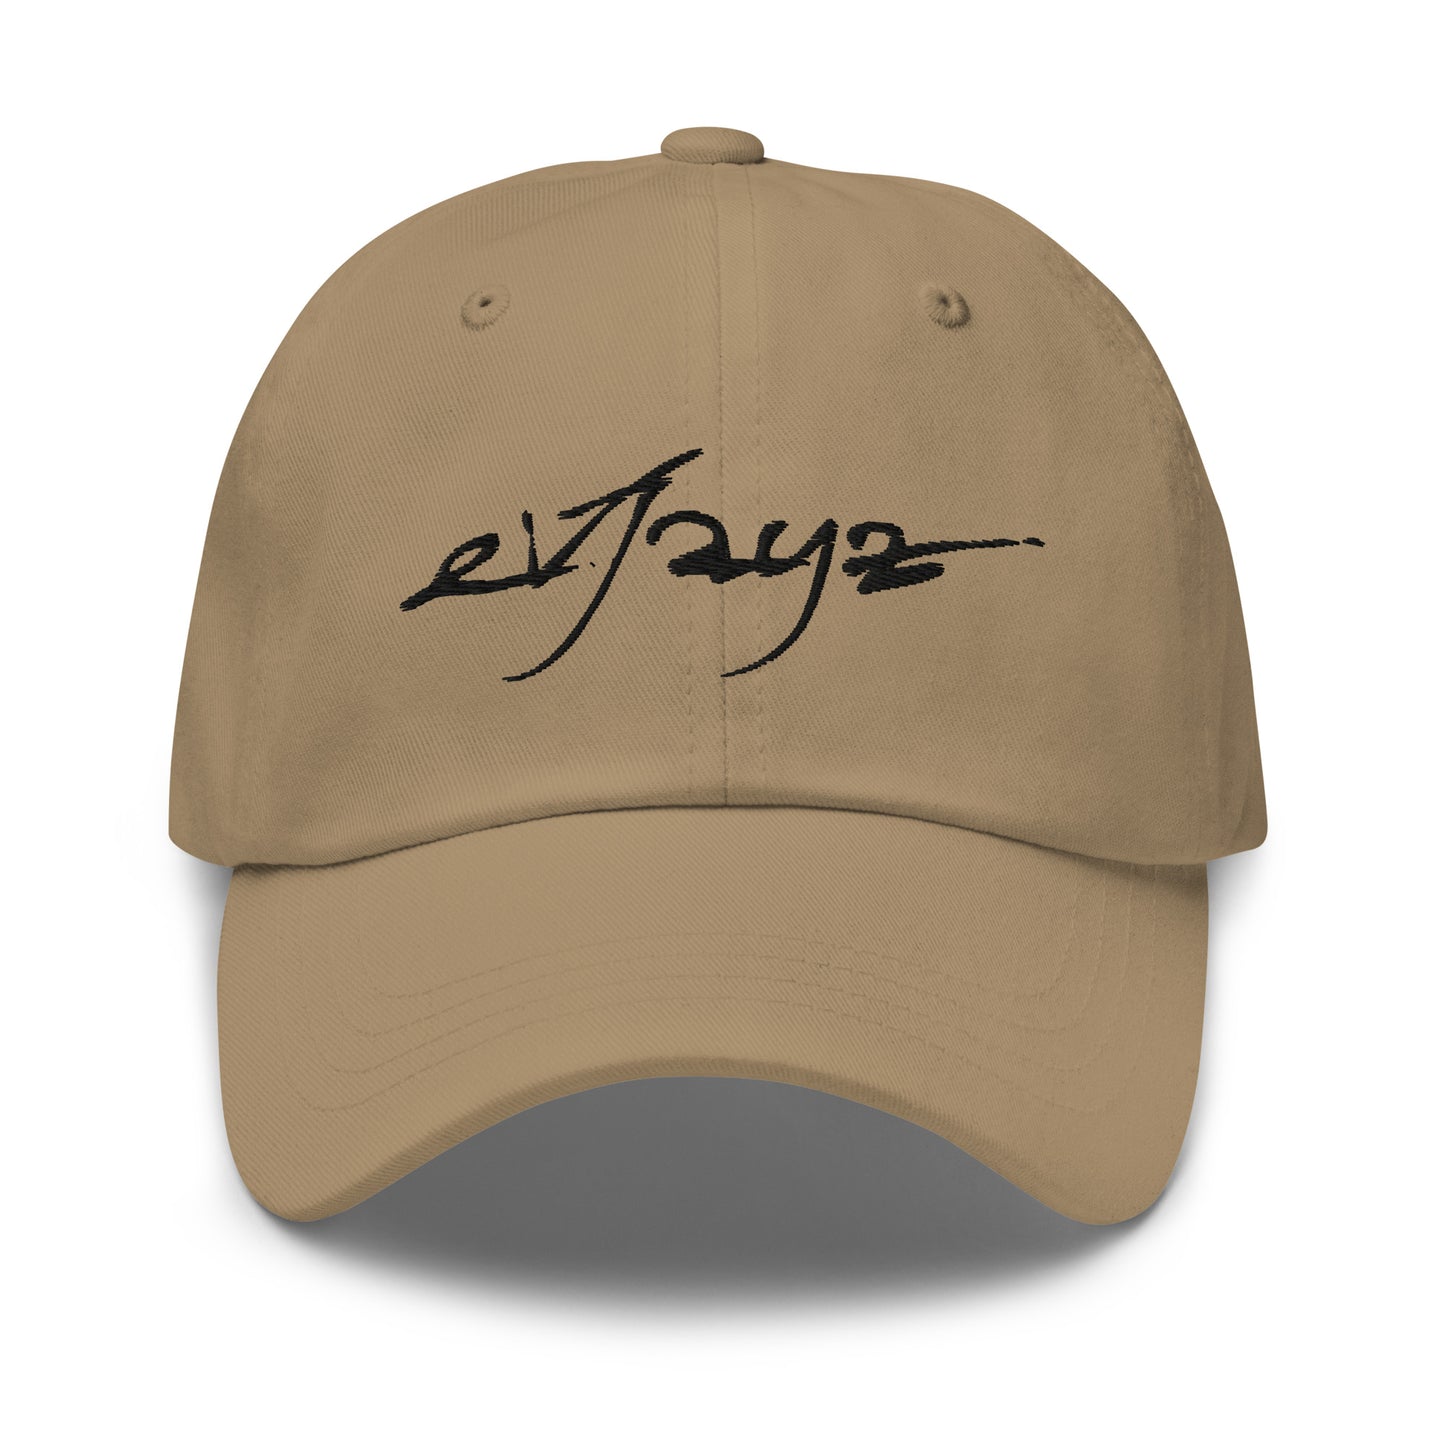 EvJayz Premium Dad hat